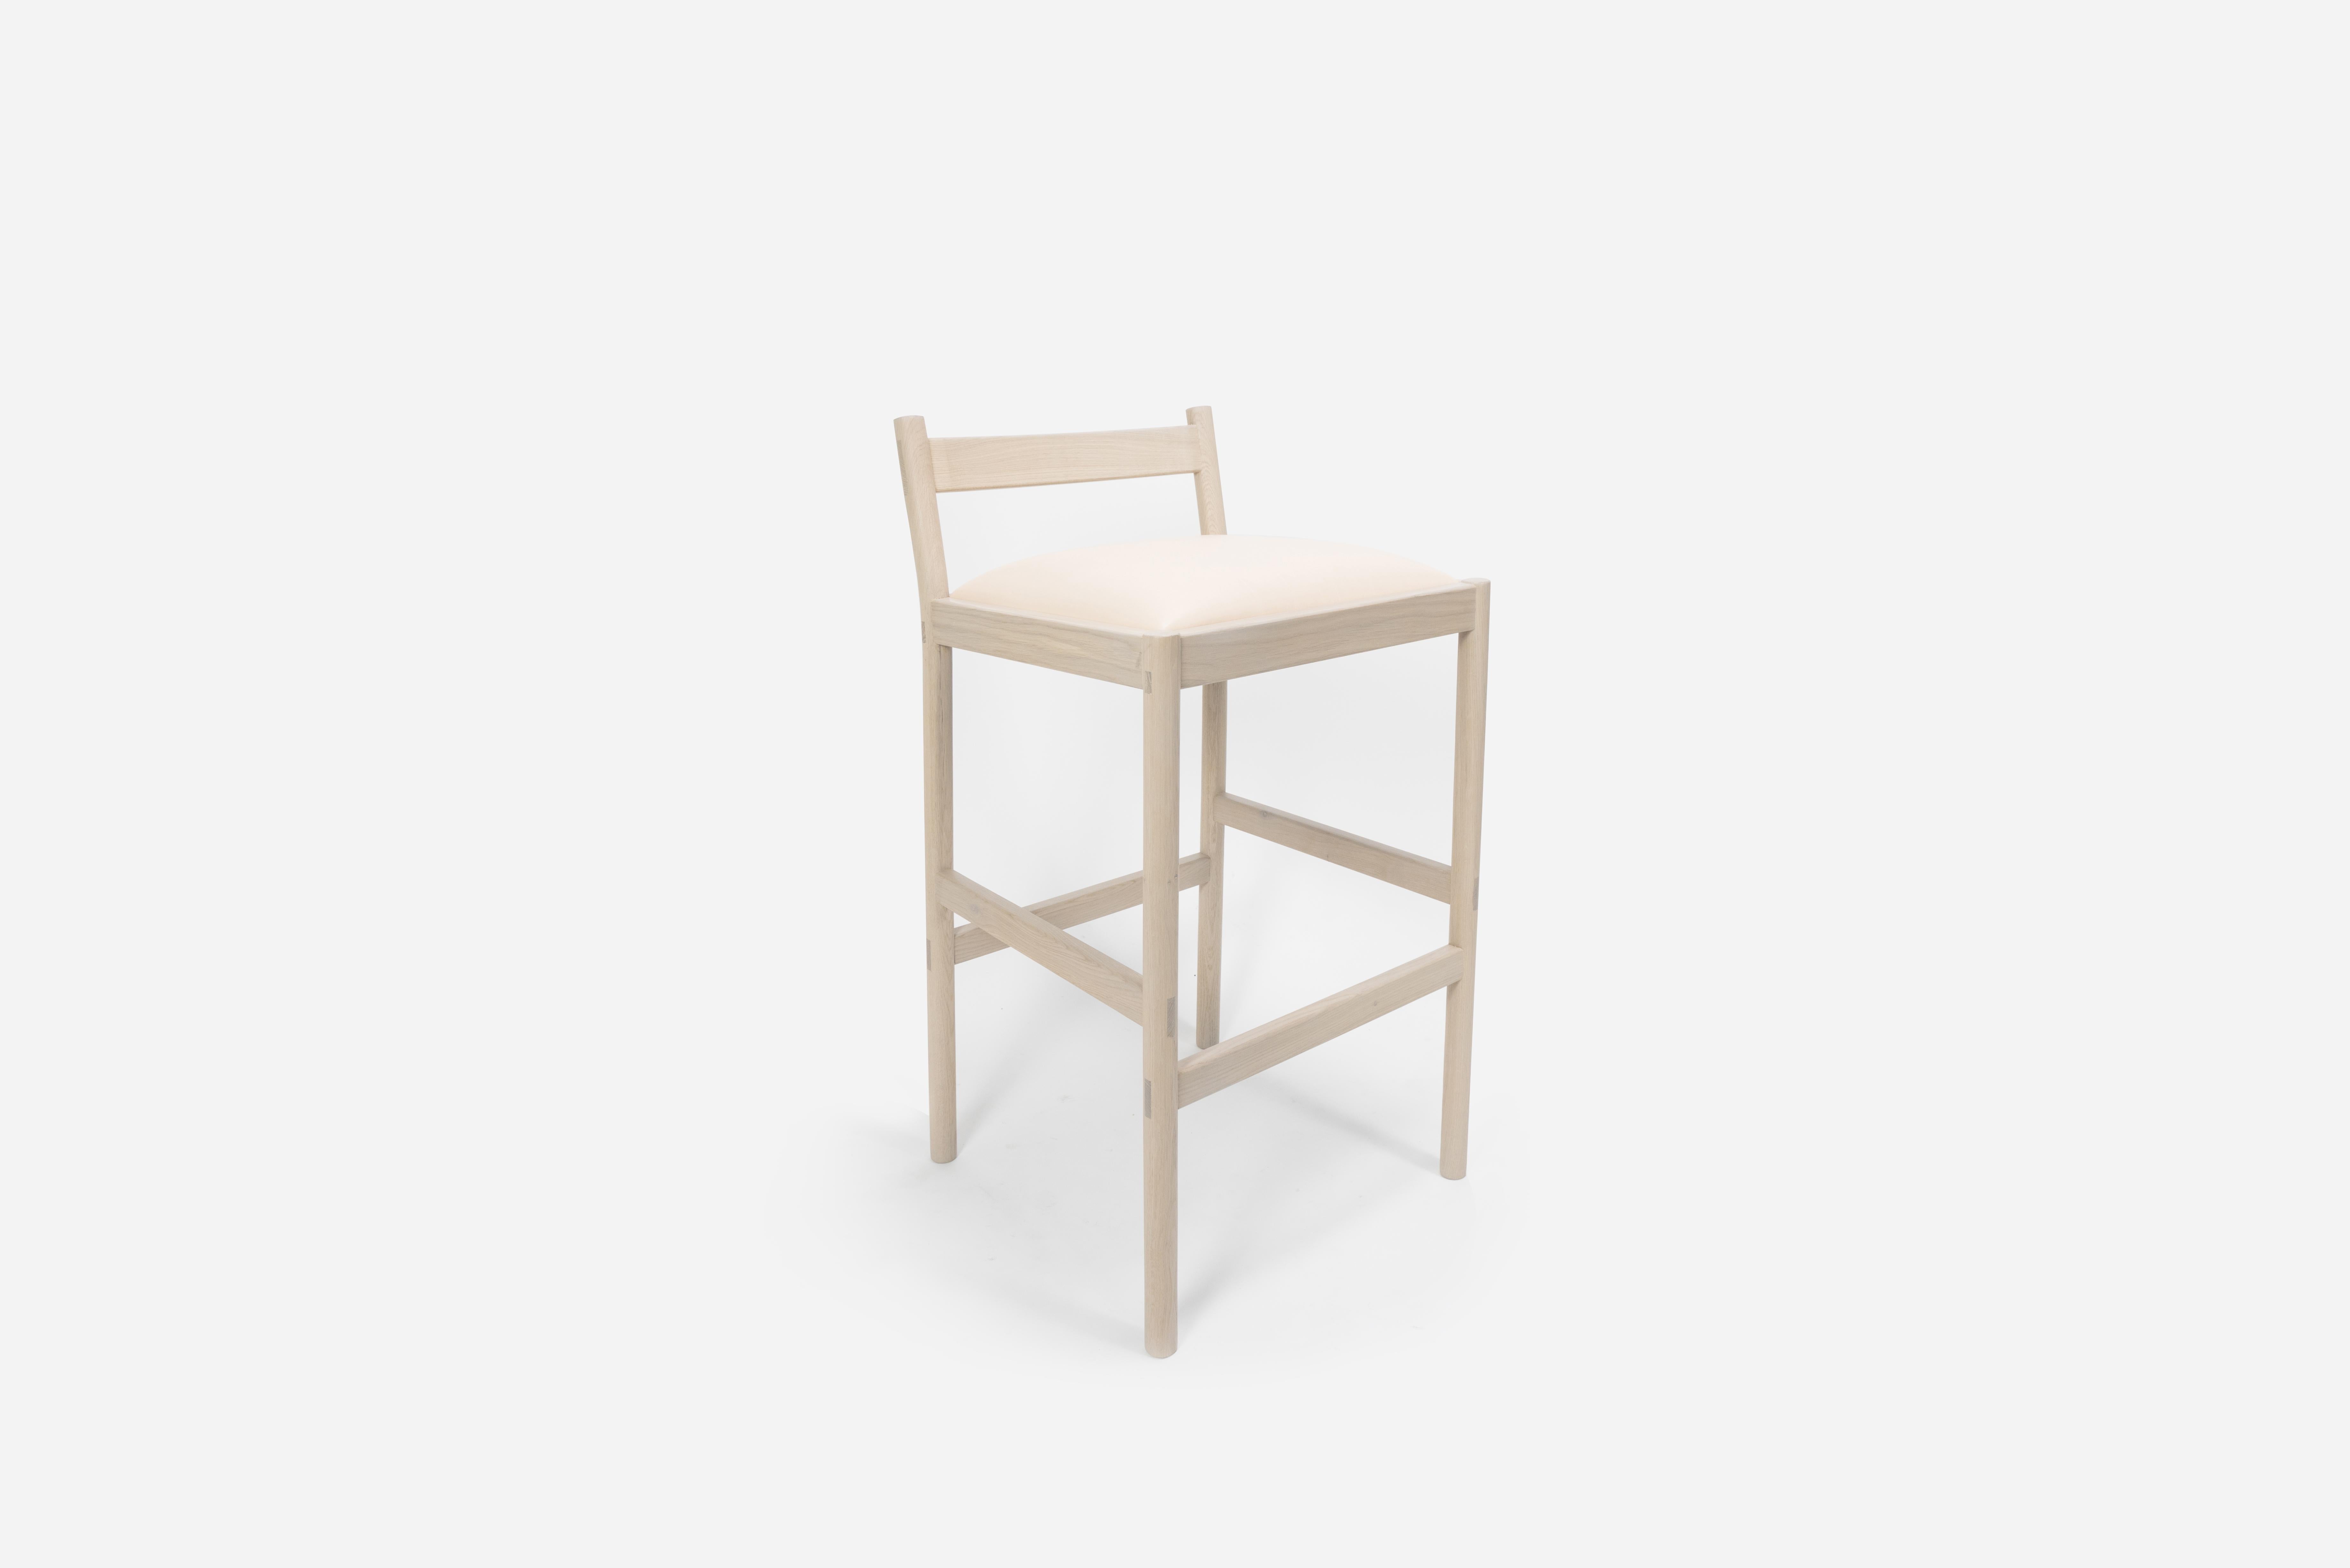 Sun at Six ist ein Studio für zeitgenössisches Möbeldesign, das mit traditionellen chinesischen Tischlermeistern zusammenarbeitet, um unsere Stücke in Handarbeit mit traditionellen Tischlerarbeiten herzustellen. Dieser minimalistische Barhocker